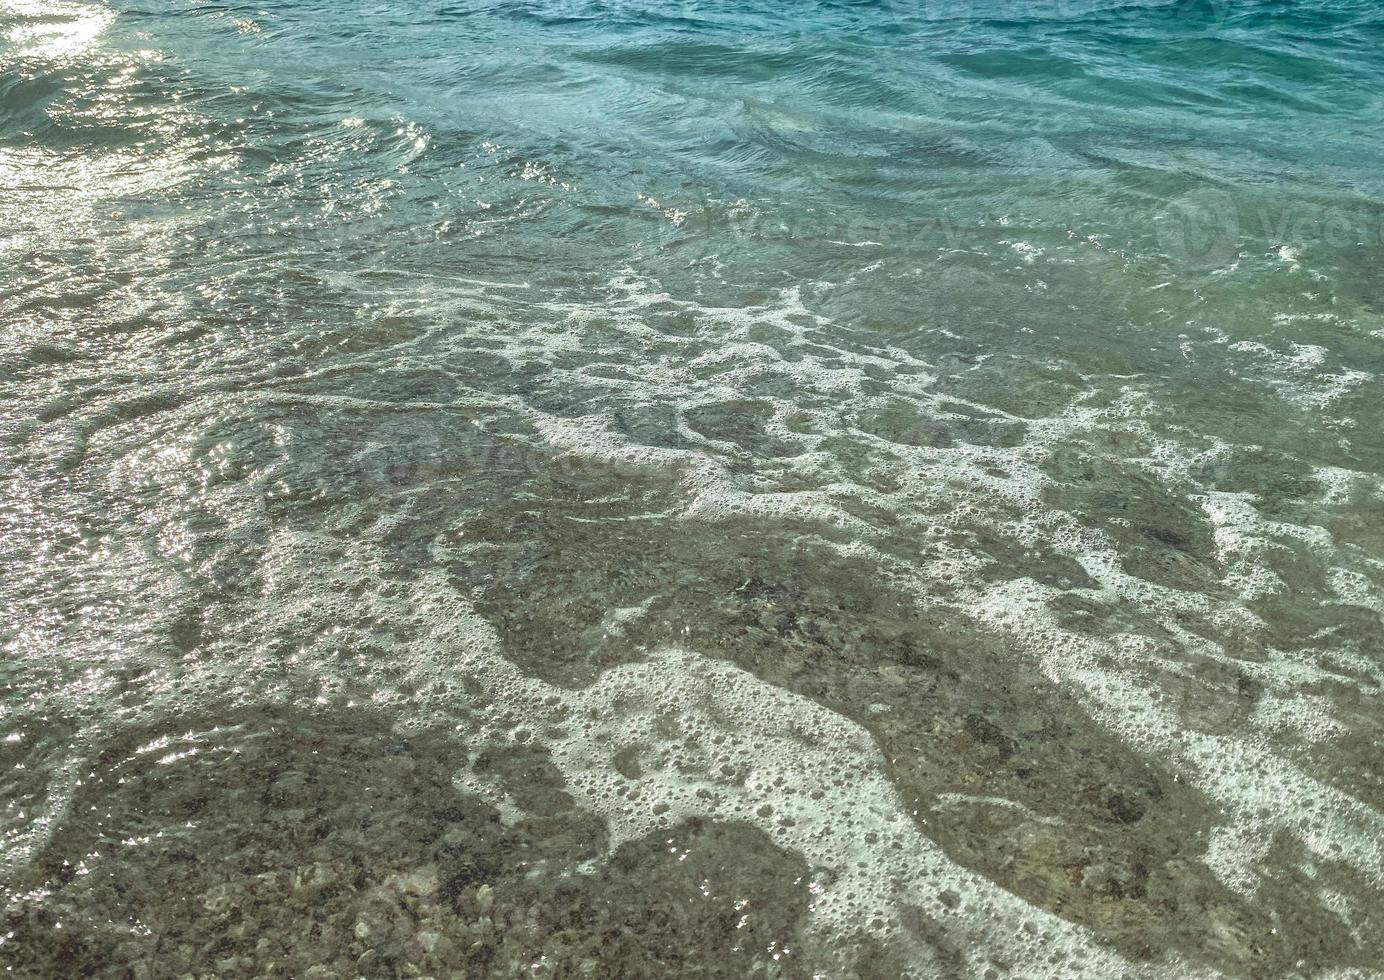 blauw water met borrelen schuim, zee kust voor toeristen naar kom tot rust in de toevlucht. turkoois zee golven, landschap, water structuur foto